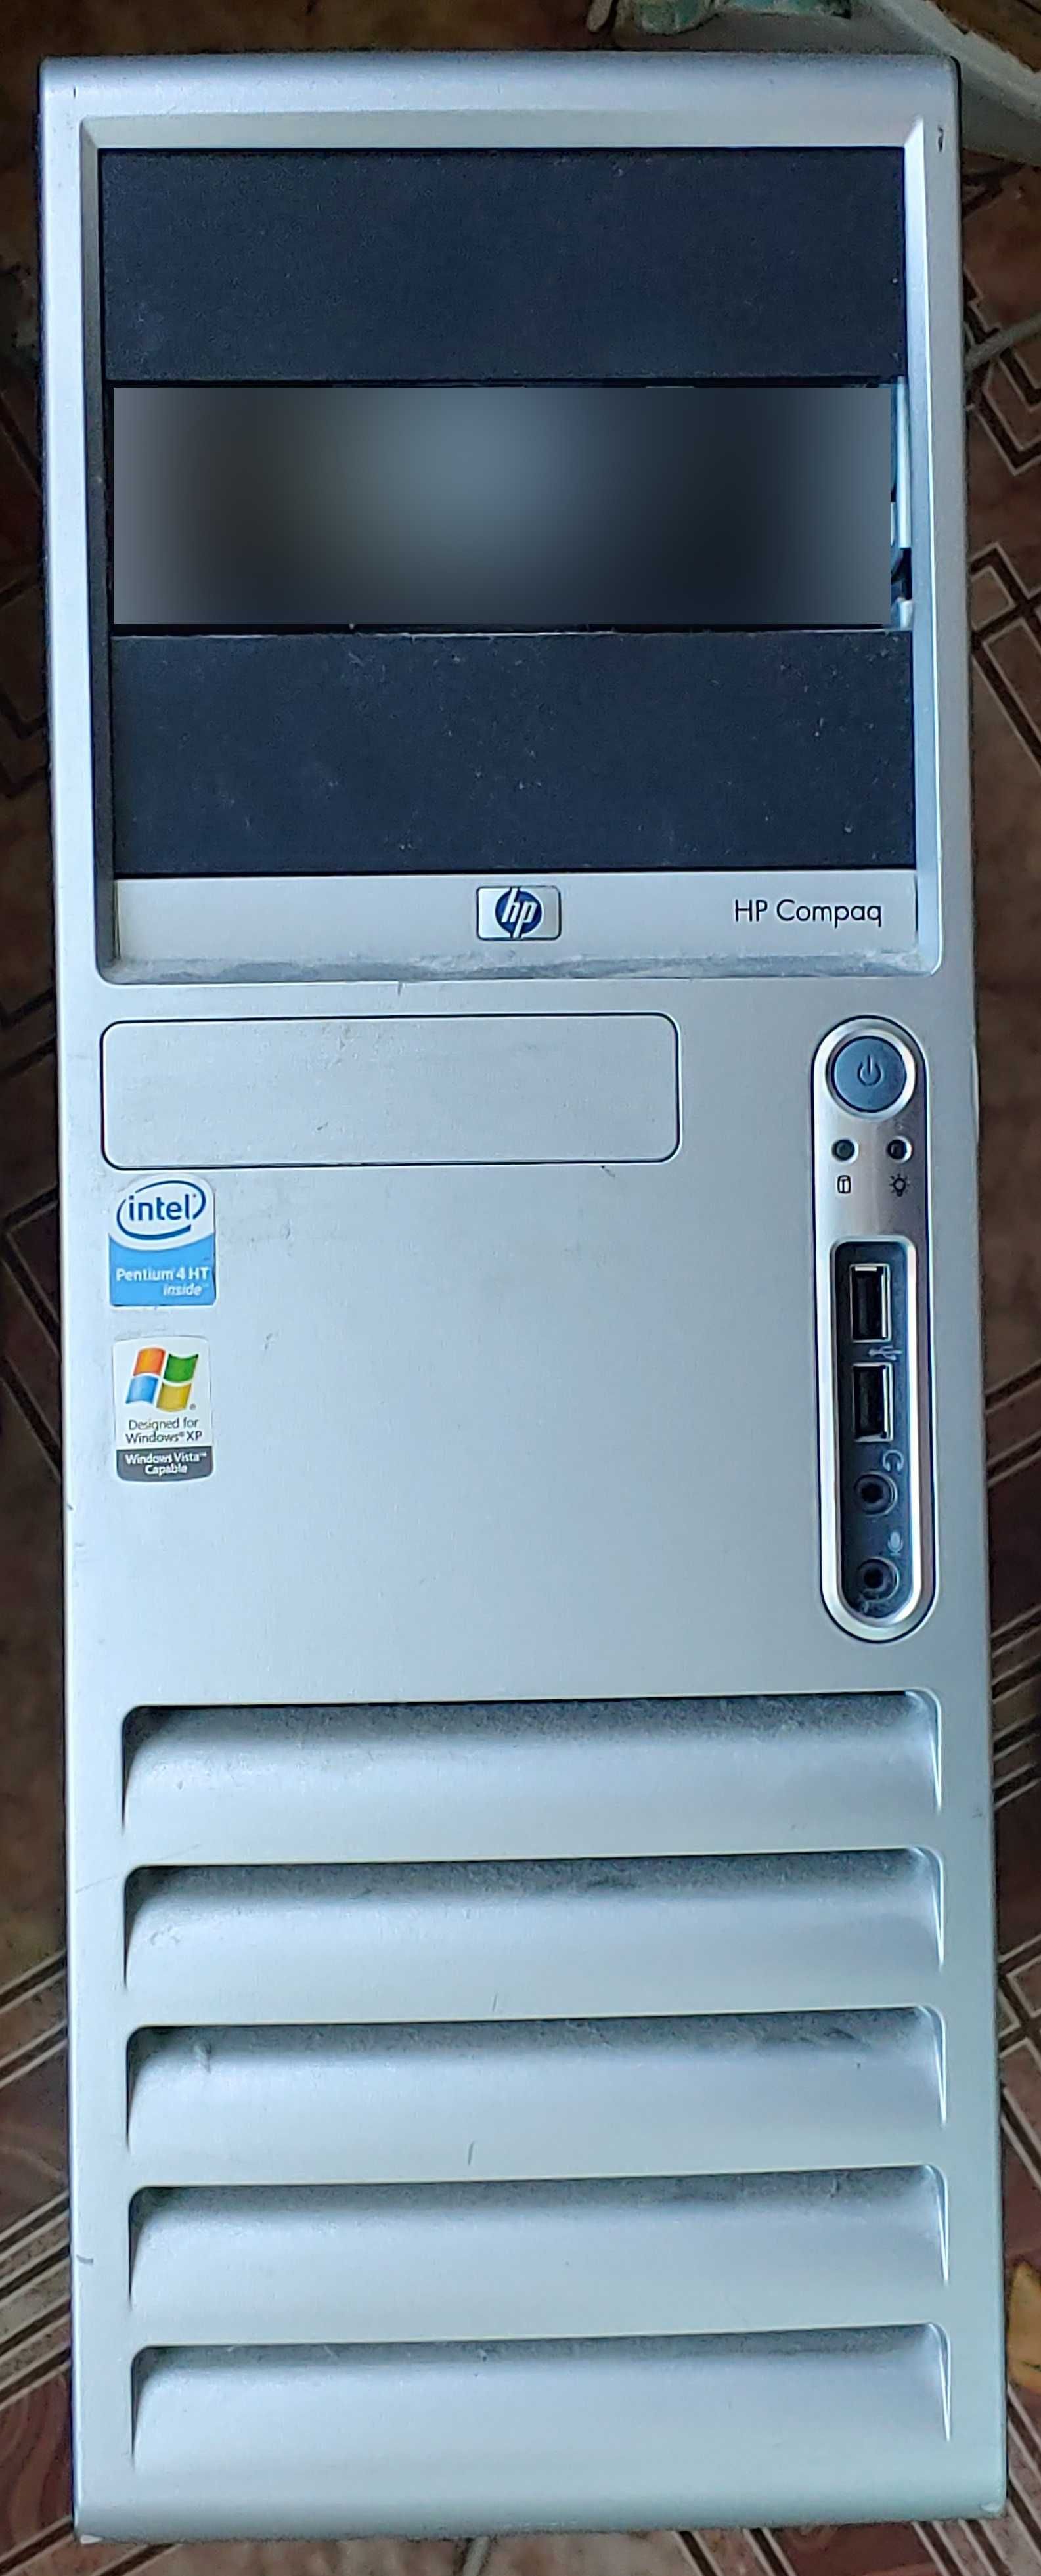 Міцний і стильний корпус HP Compaq 7600